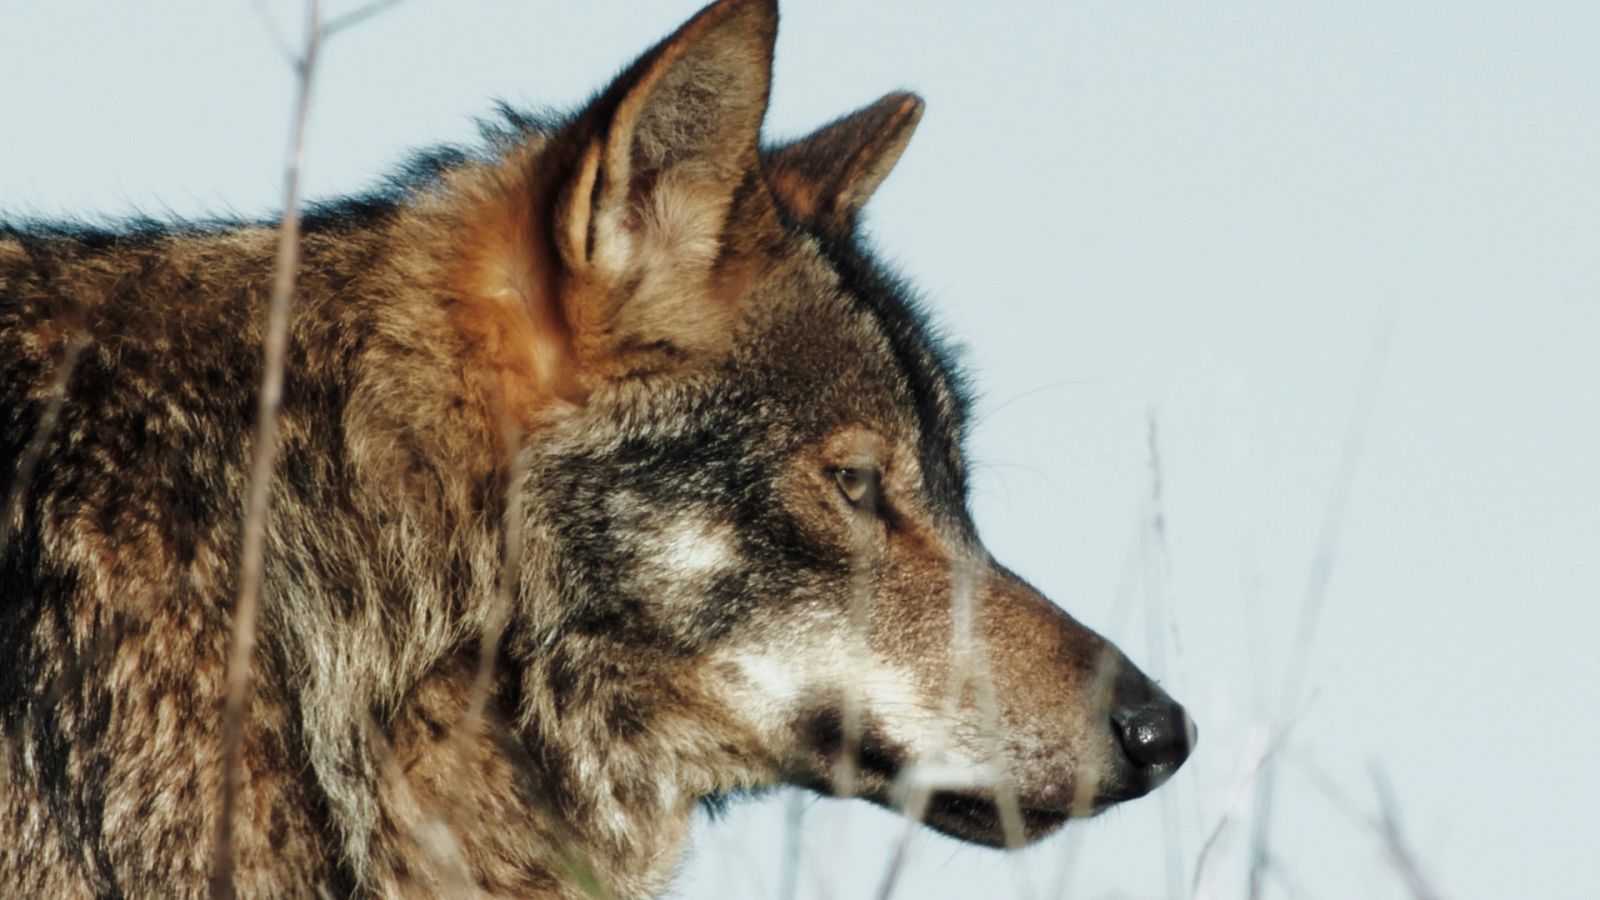 Cazadores salvajes - Wild hunters - Episodio 4: Lobos y chacales -  Documental en RTVE